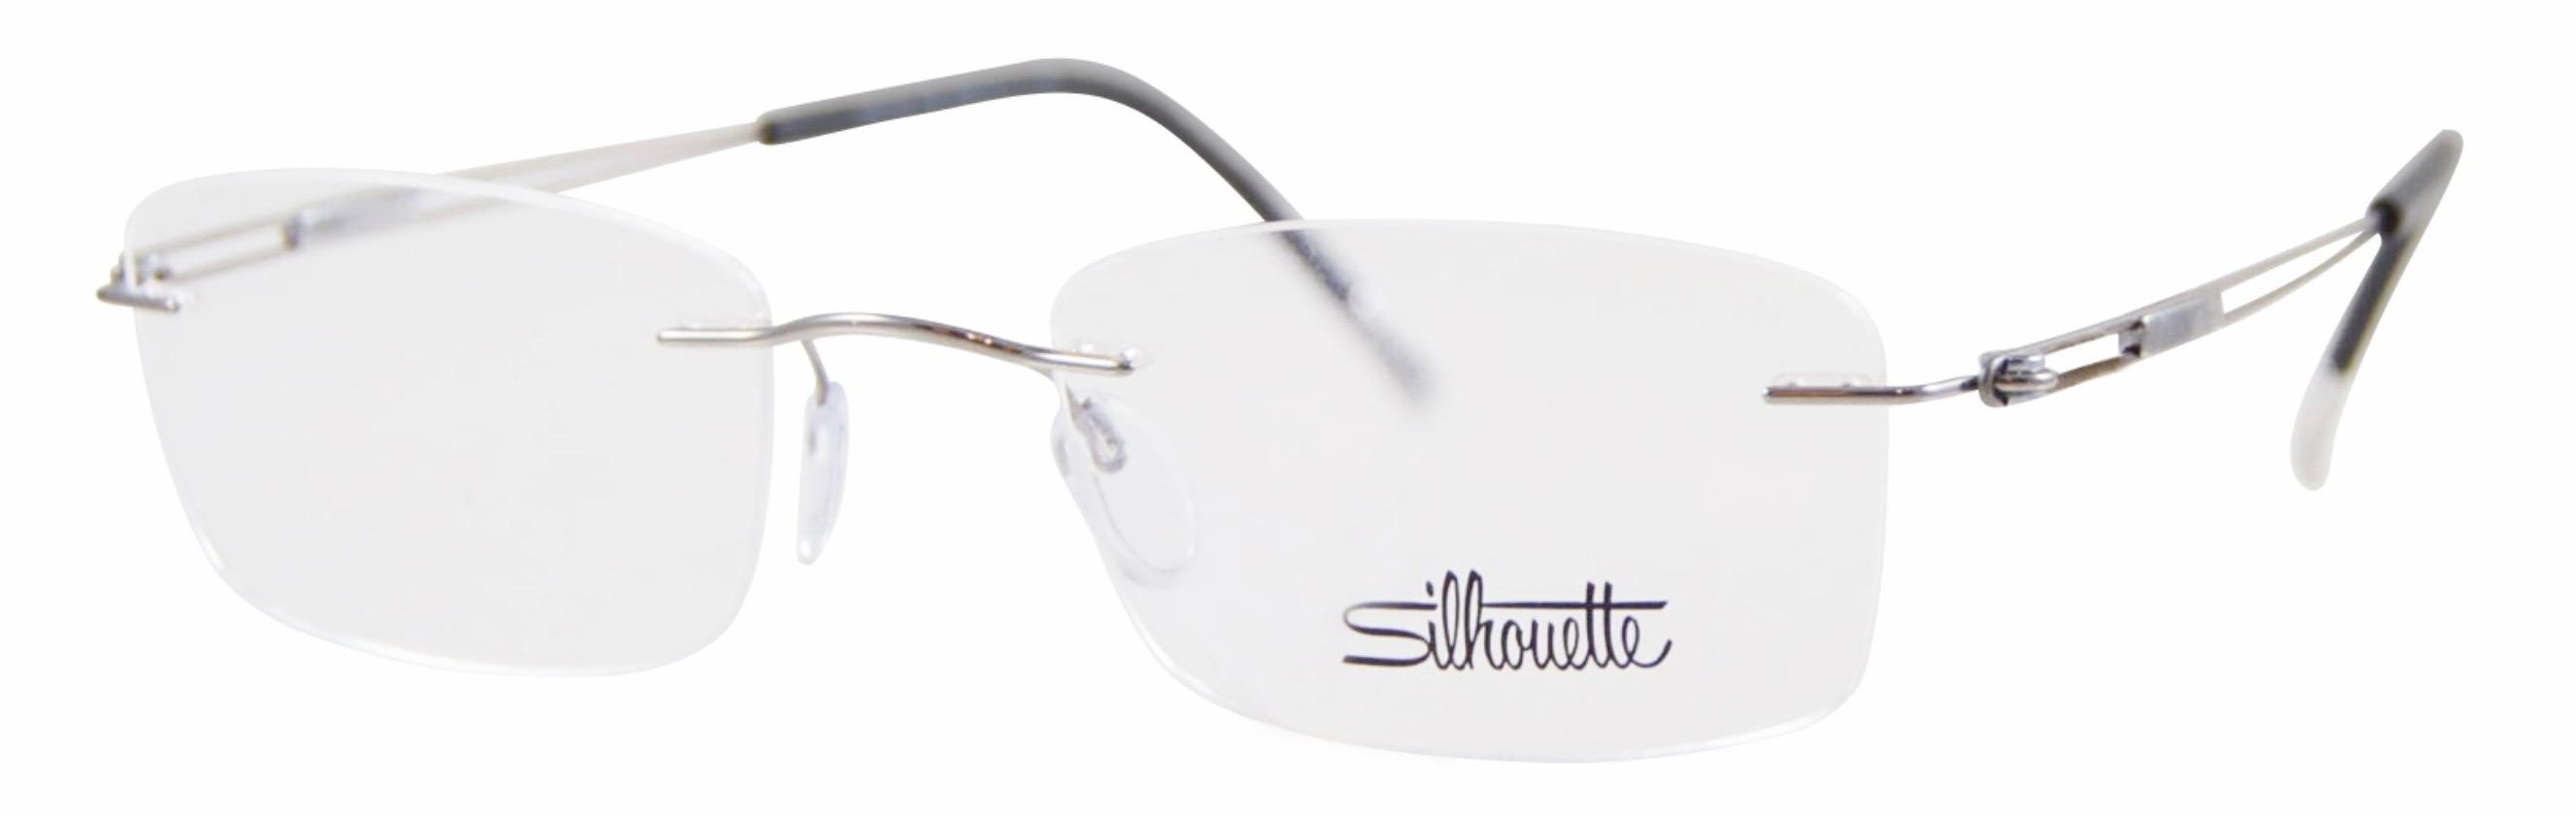 Rimless Eyeglasses Online Shop Frameless Glasses